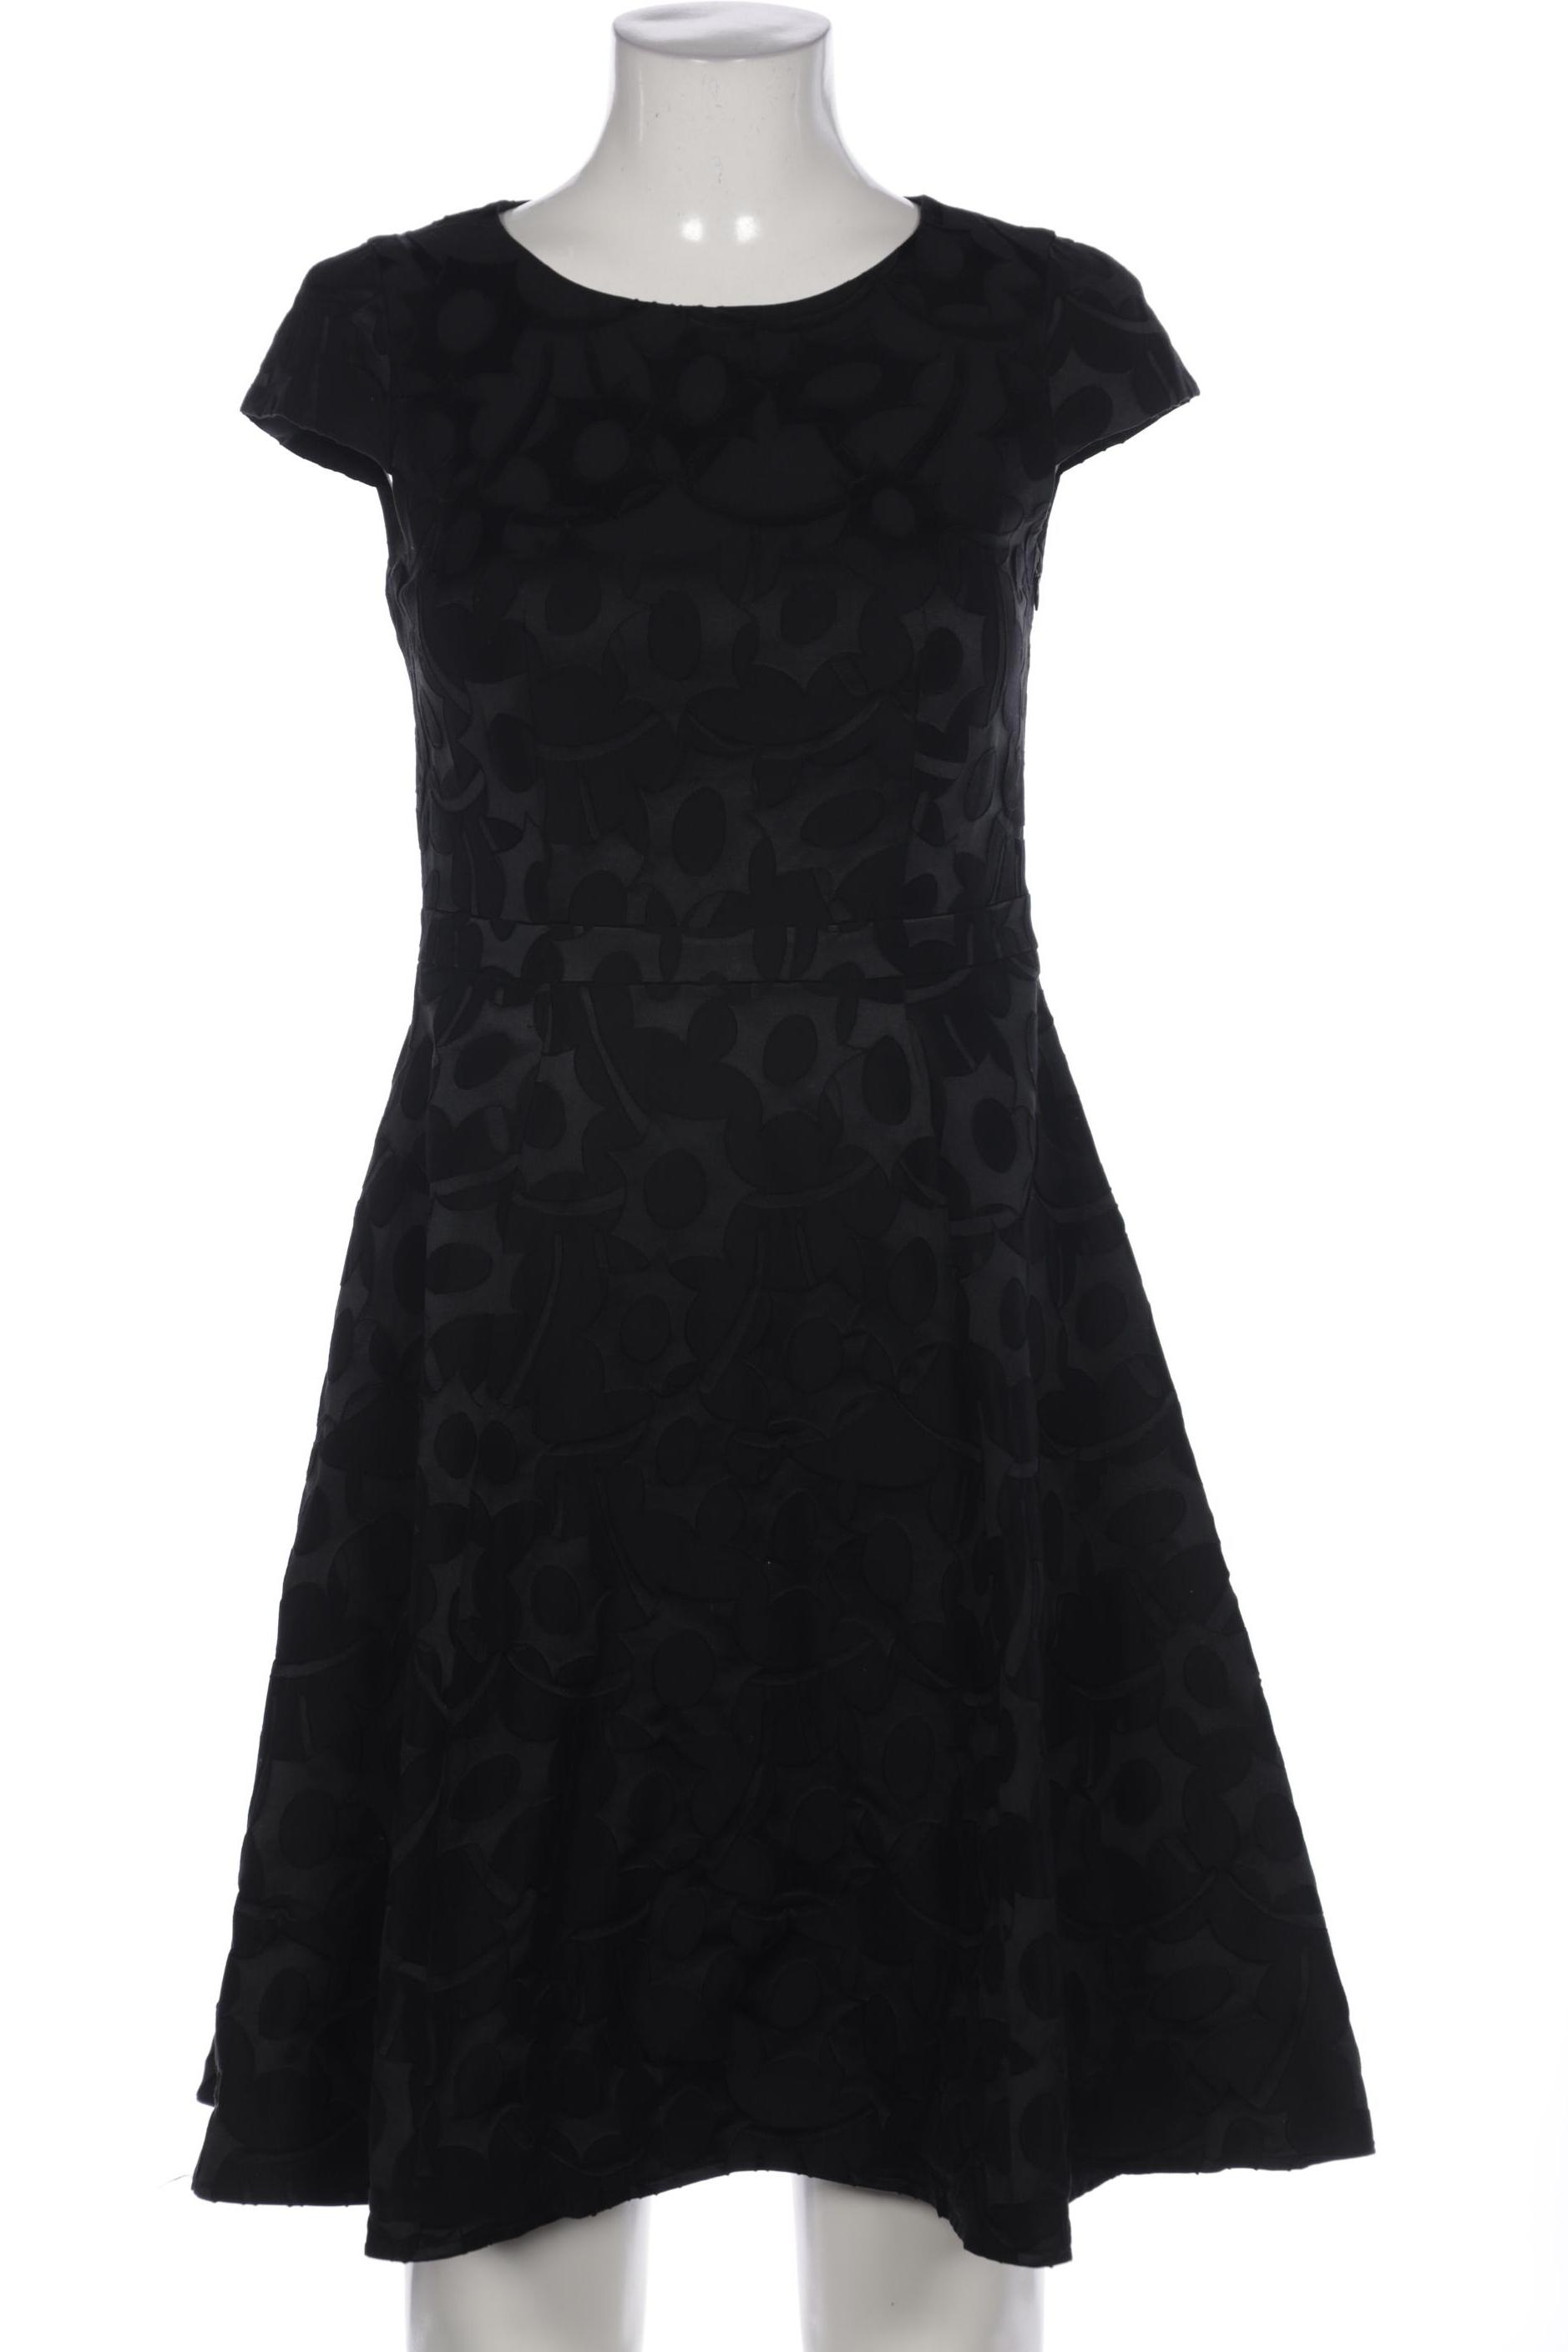 Luisa Cerano Damen Kleid, schwarz, Gr. 36 von LUISA CERANO